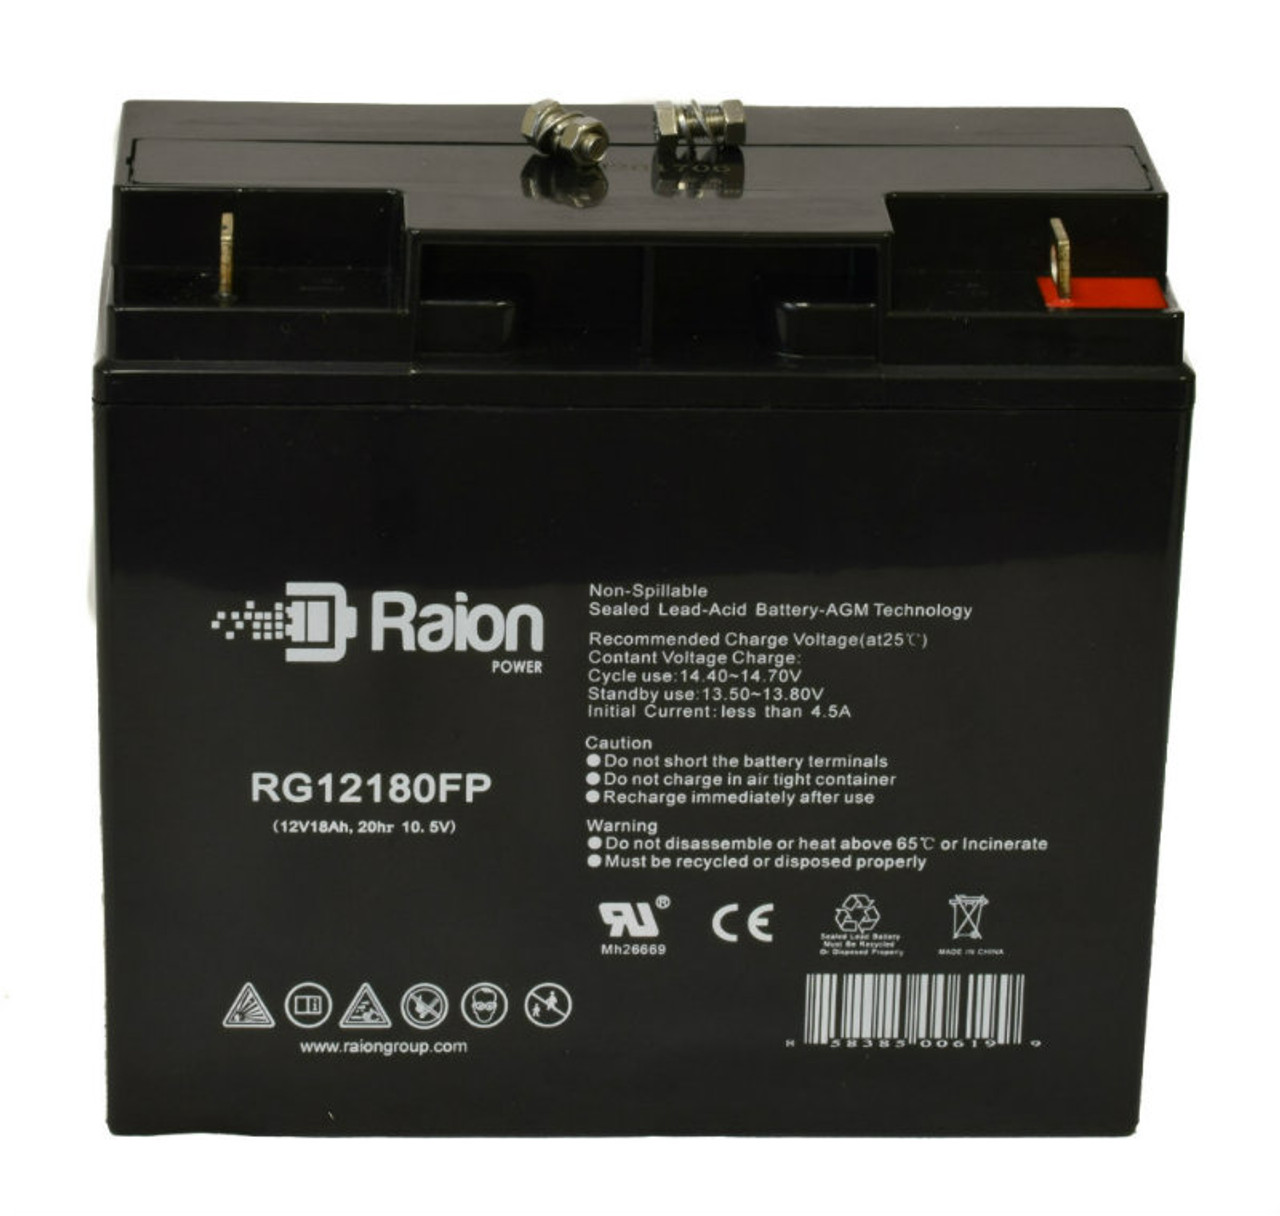 Raion Power RG12180FP 12V 18Ah Lead Acid Battery for SunStone Power SPT12-20